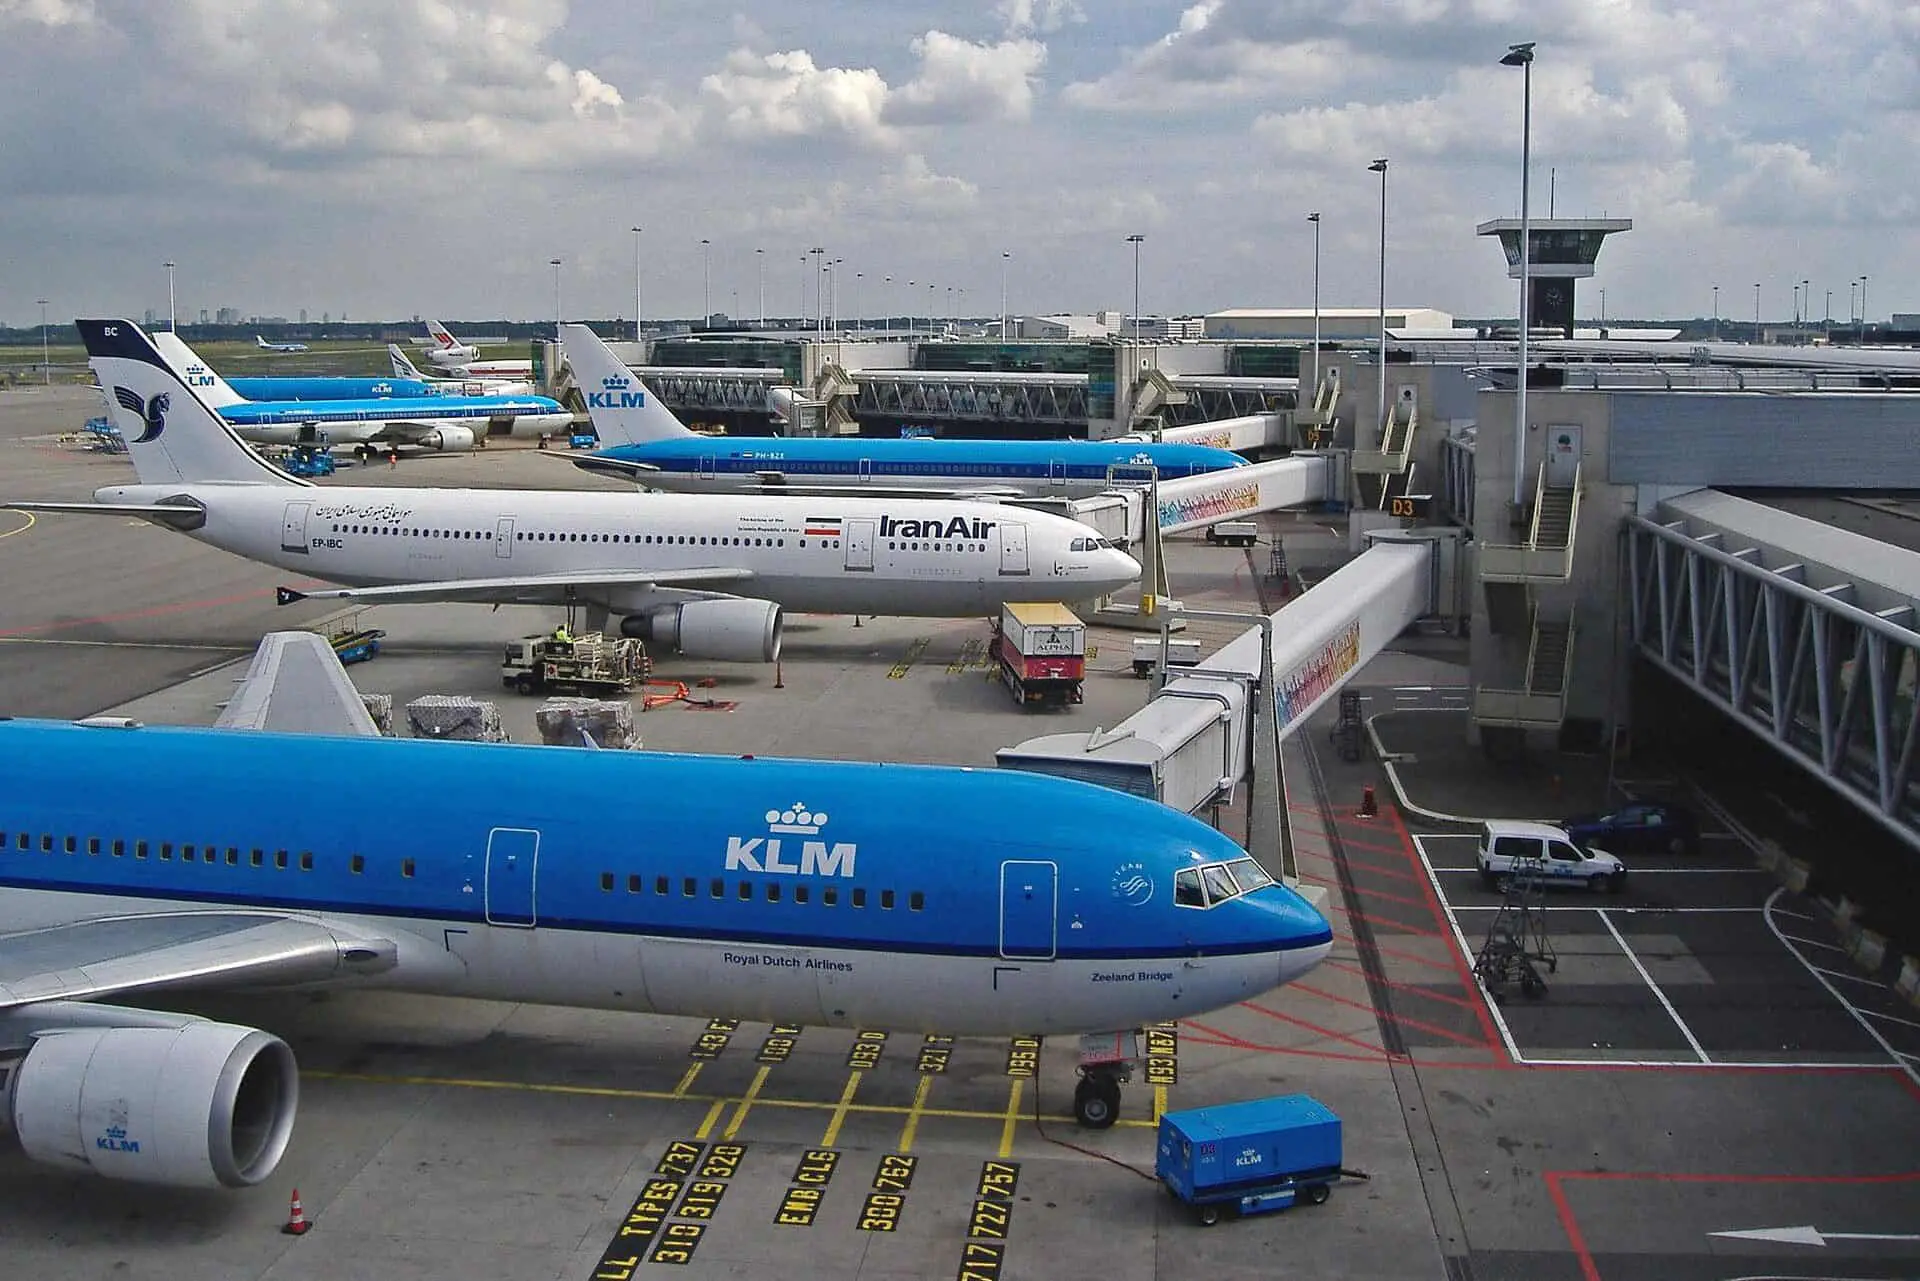 Airport KLM